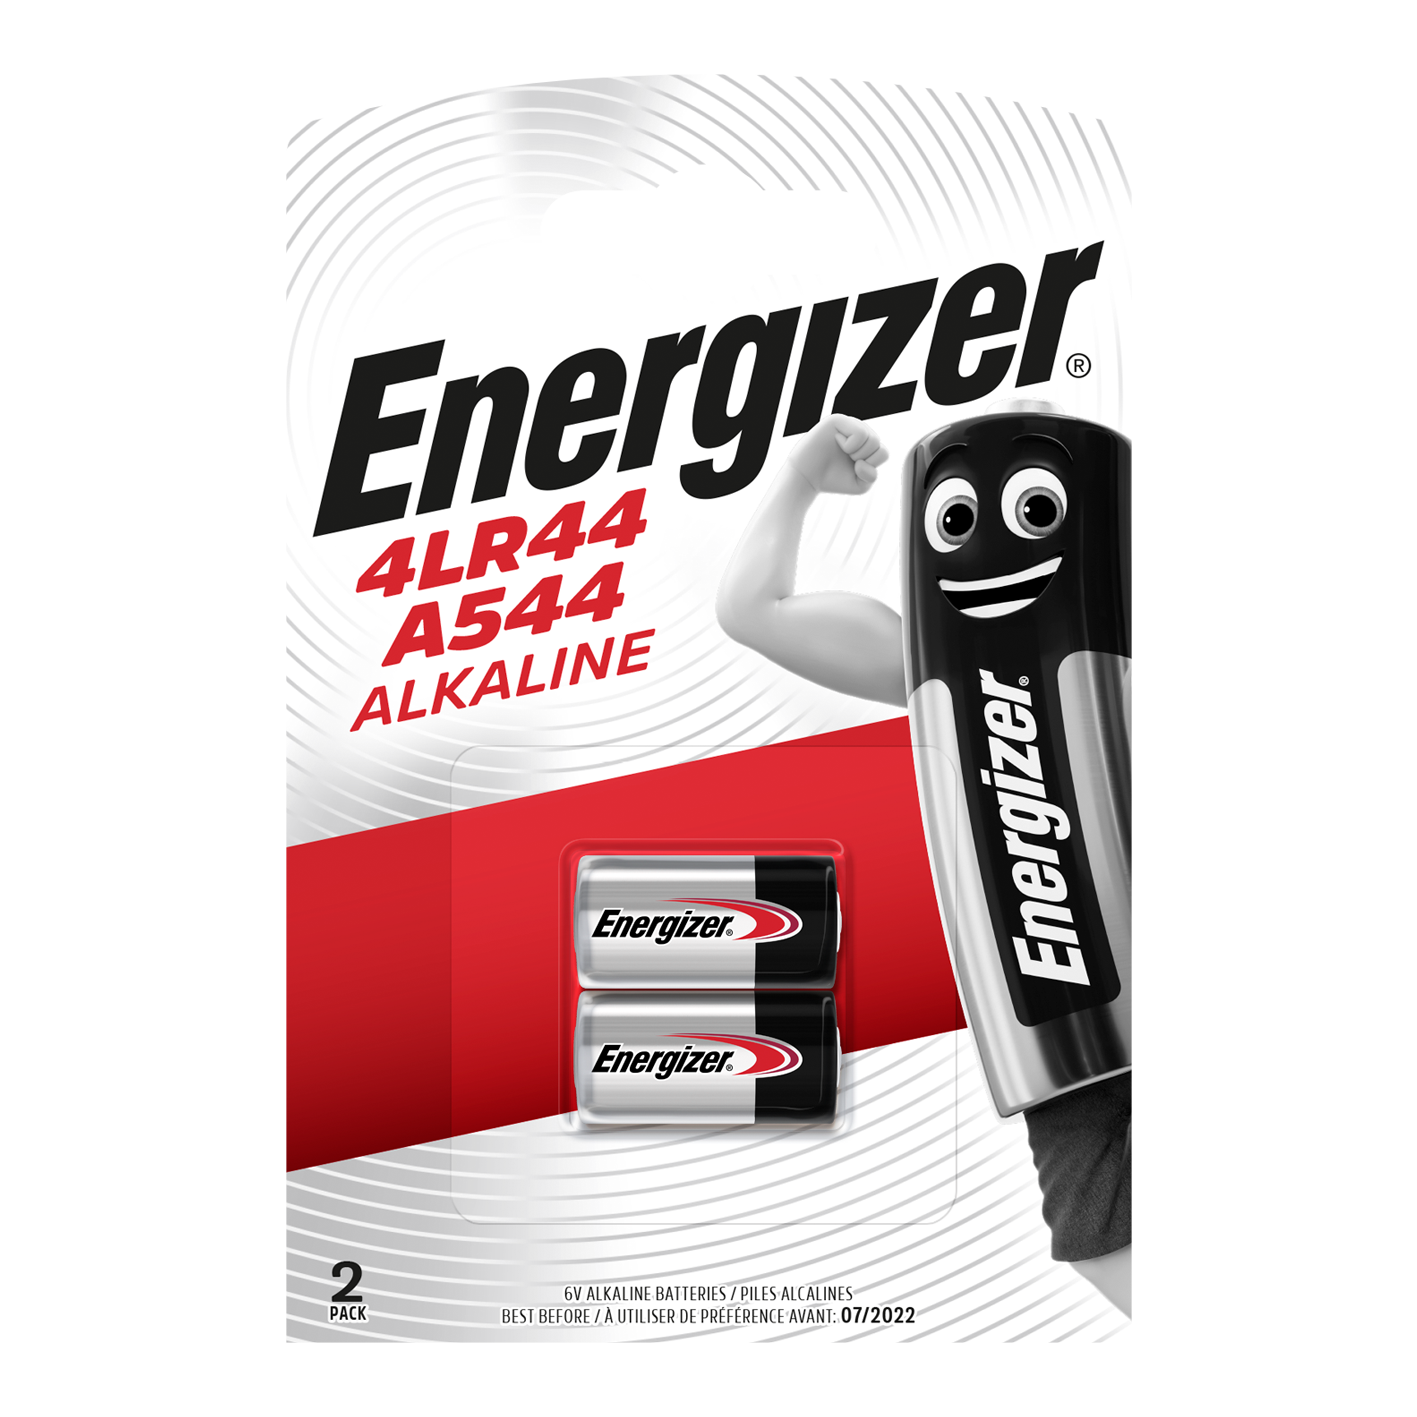 Energizer 4LR44/A544 Alkaline, 2er-Pack